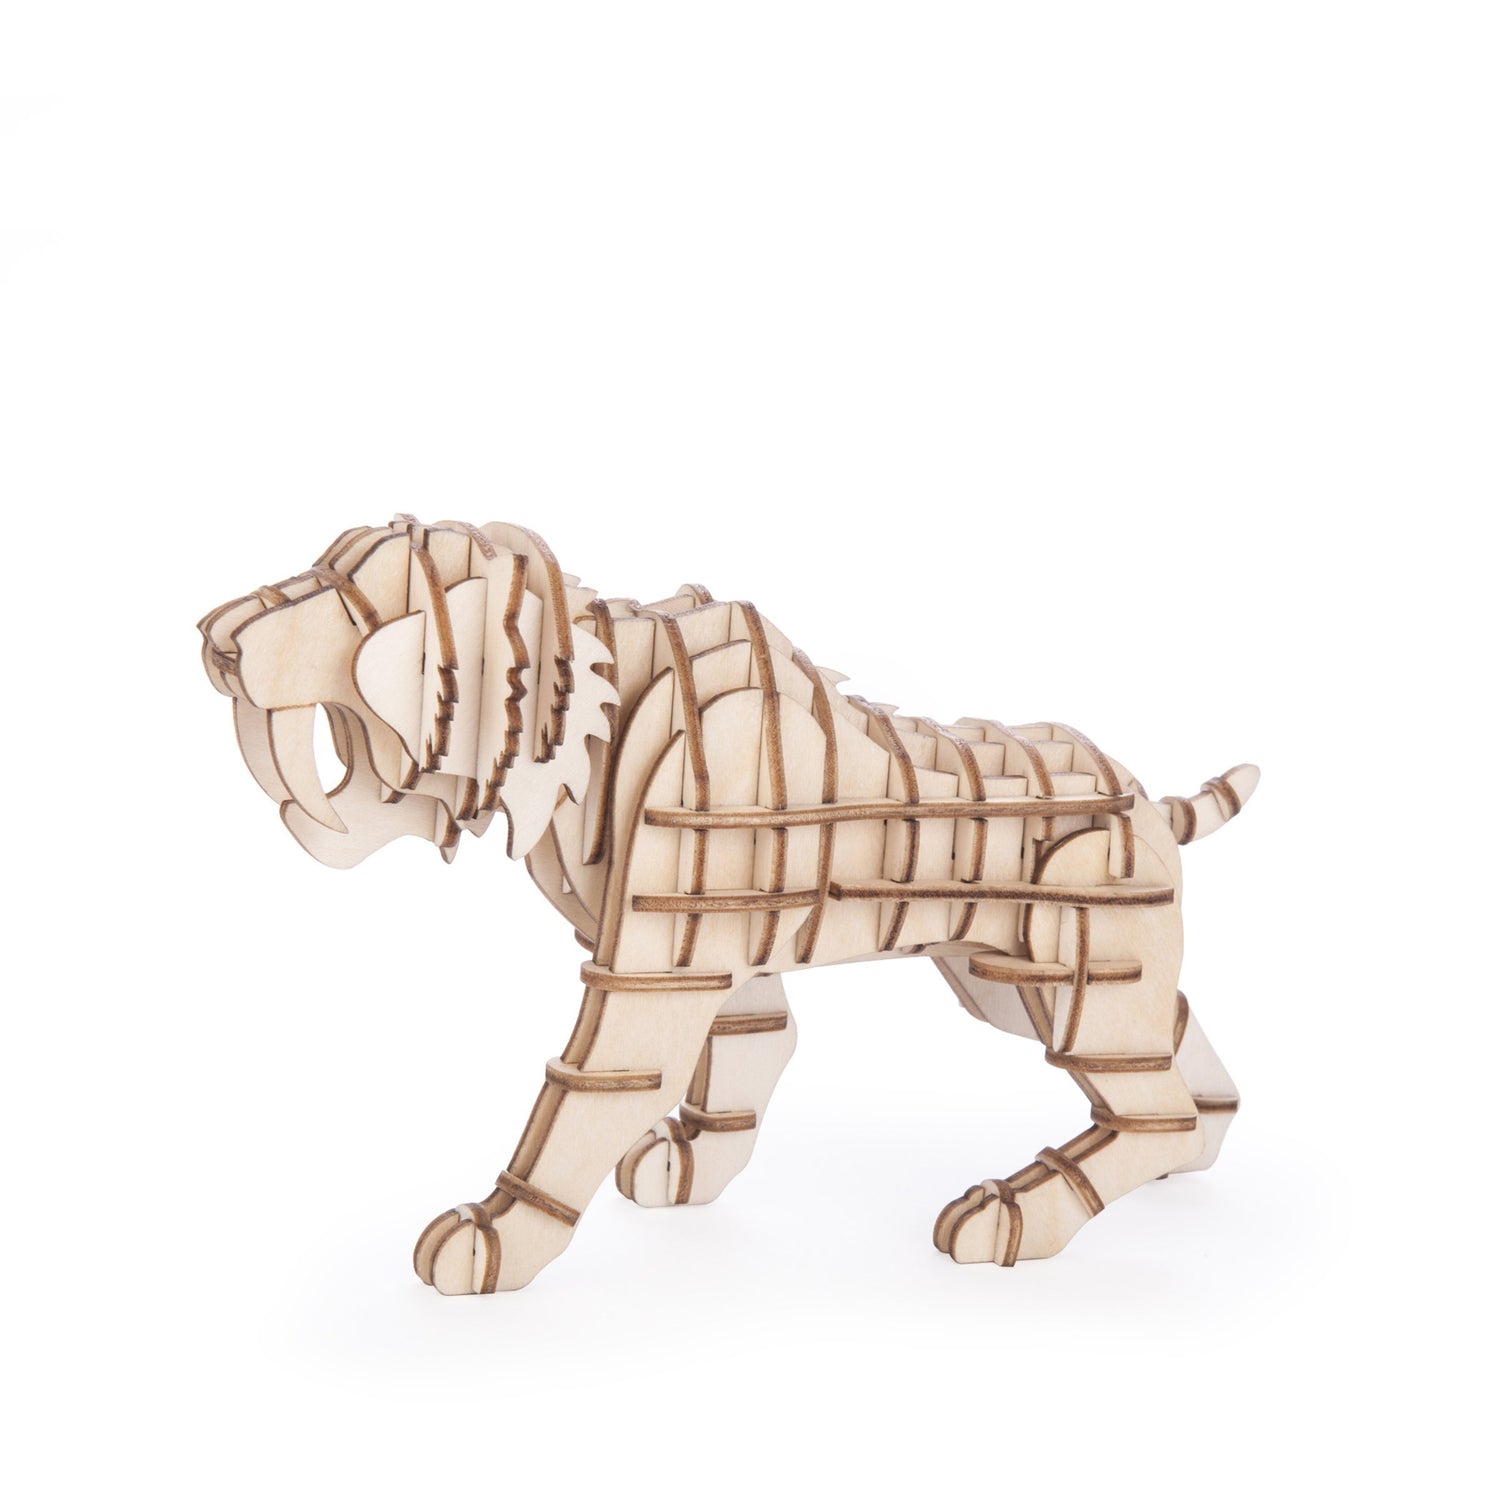 Tigre 3D puzzle di legno